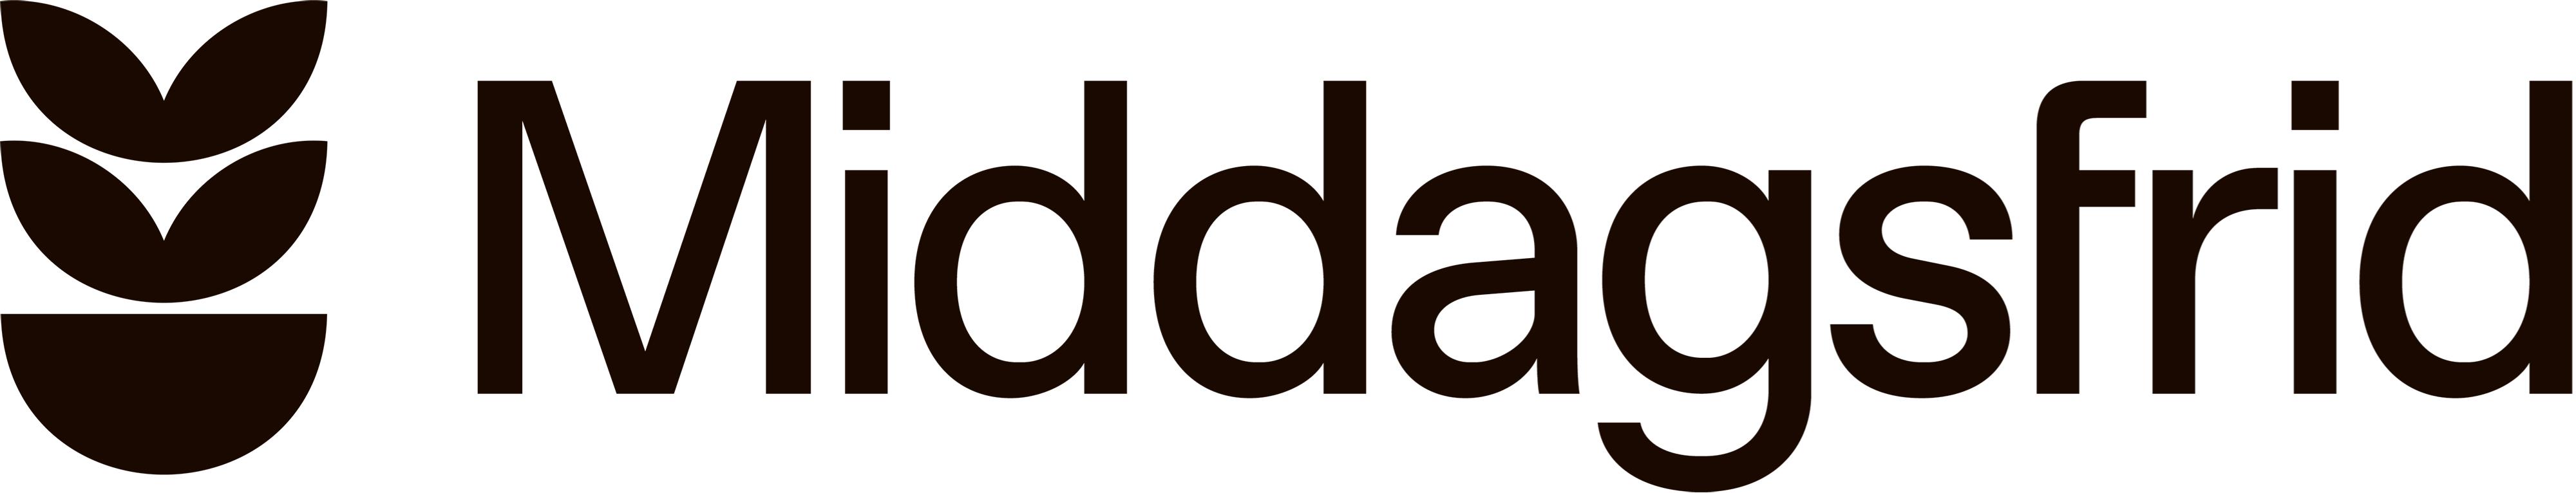 Logo of Middagsfrid